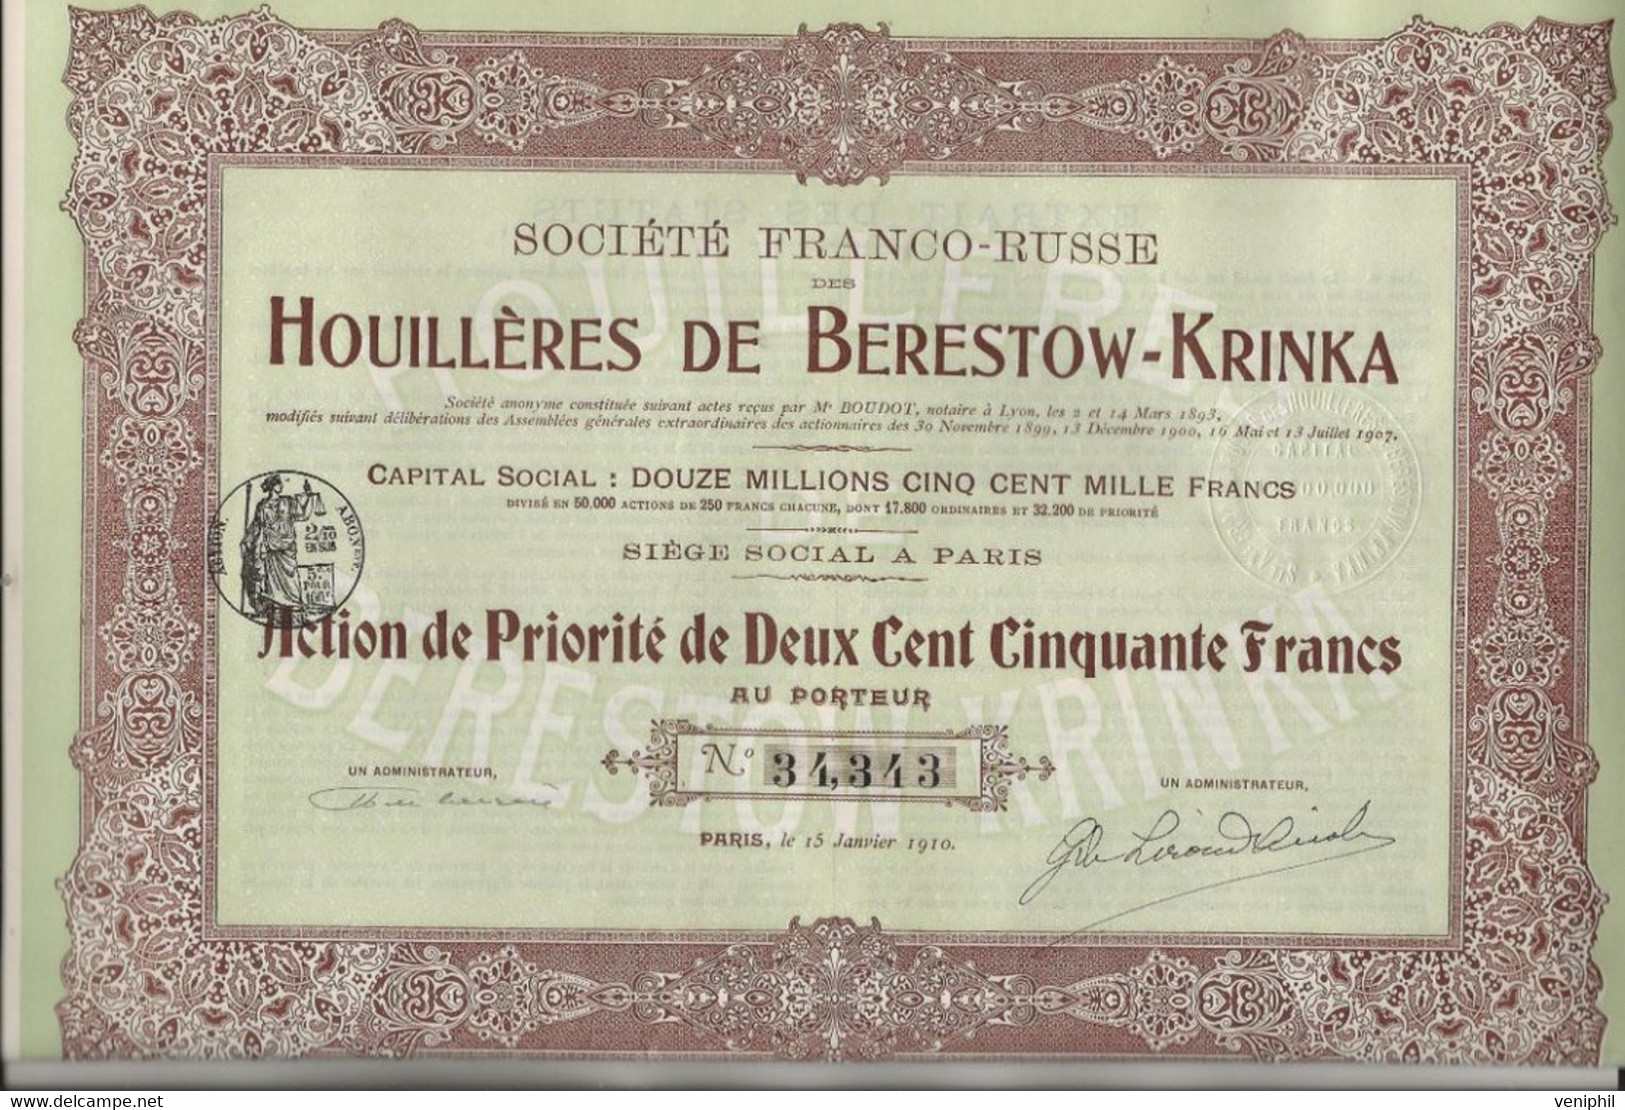 SOCIETE FRANCO -RUSSE DES HOUILLERES DE BERESTOW - KRINKA - LOT DE 3 ACTIONS DE PRIORITE DE 250 FRS -ANNEE 1910 - Mines